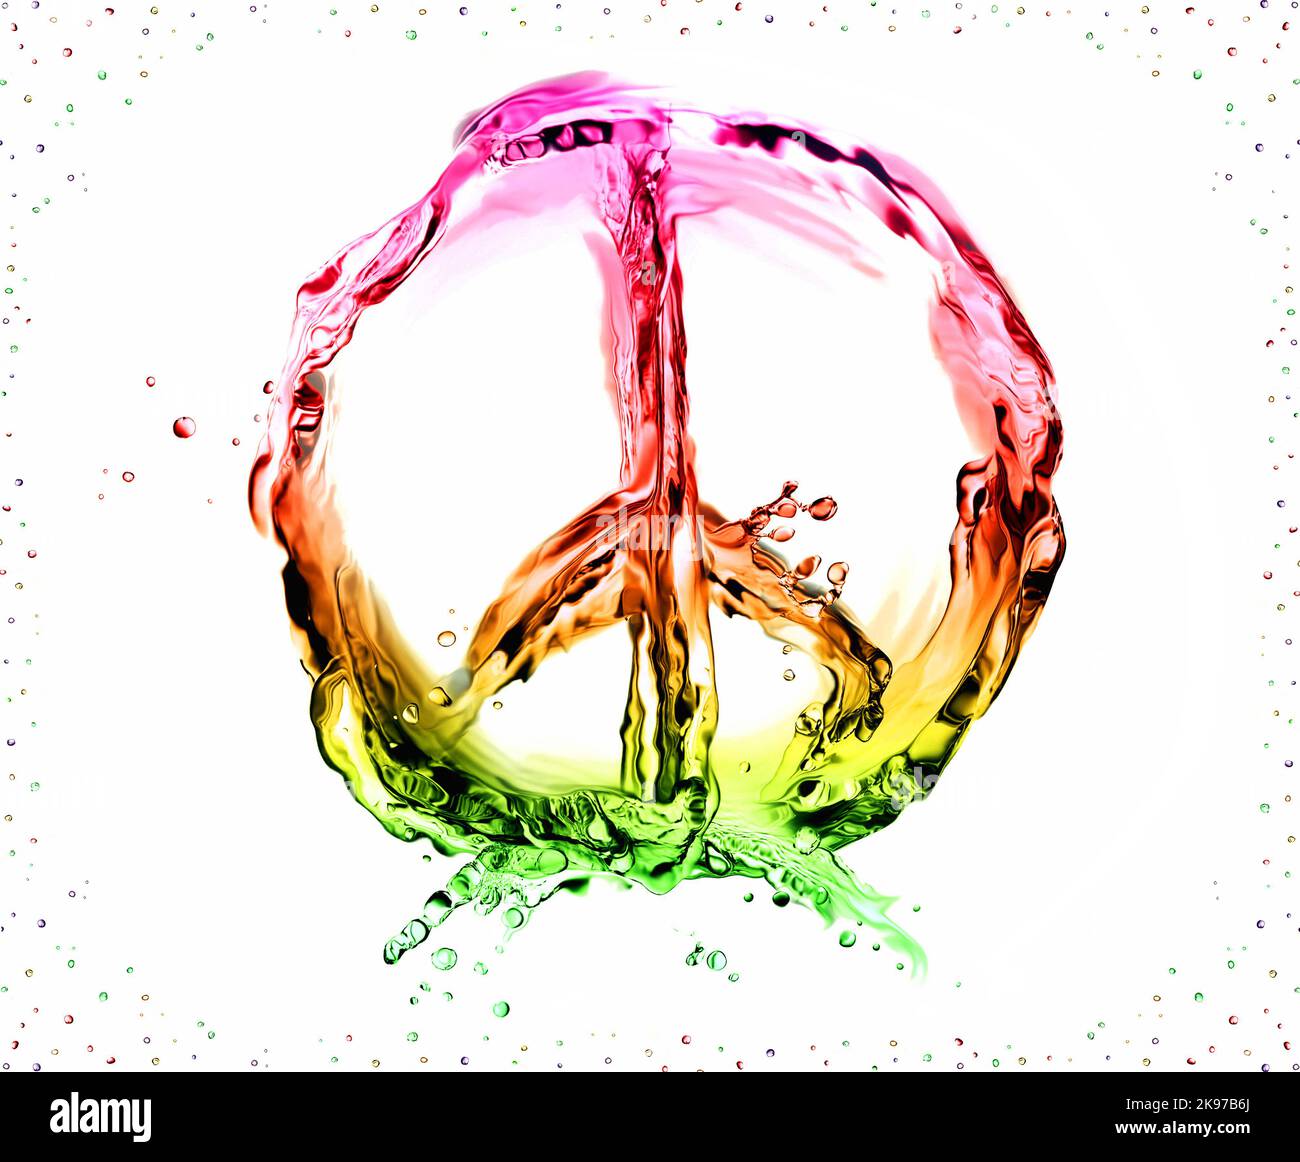 Il simbolo della pace e dell'amore è fatto di liquido multicolore su bianco e incorniciato da bollicine. Foto Stock